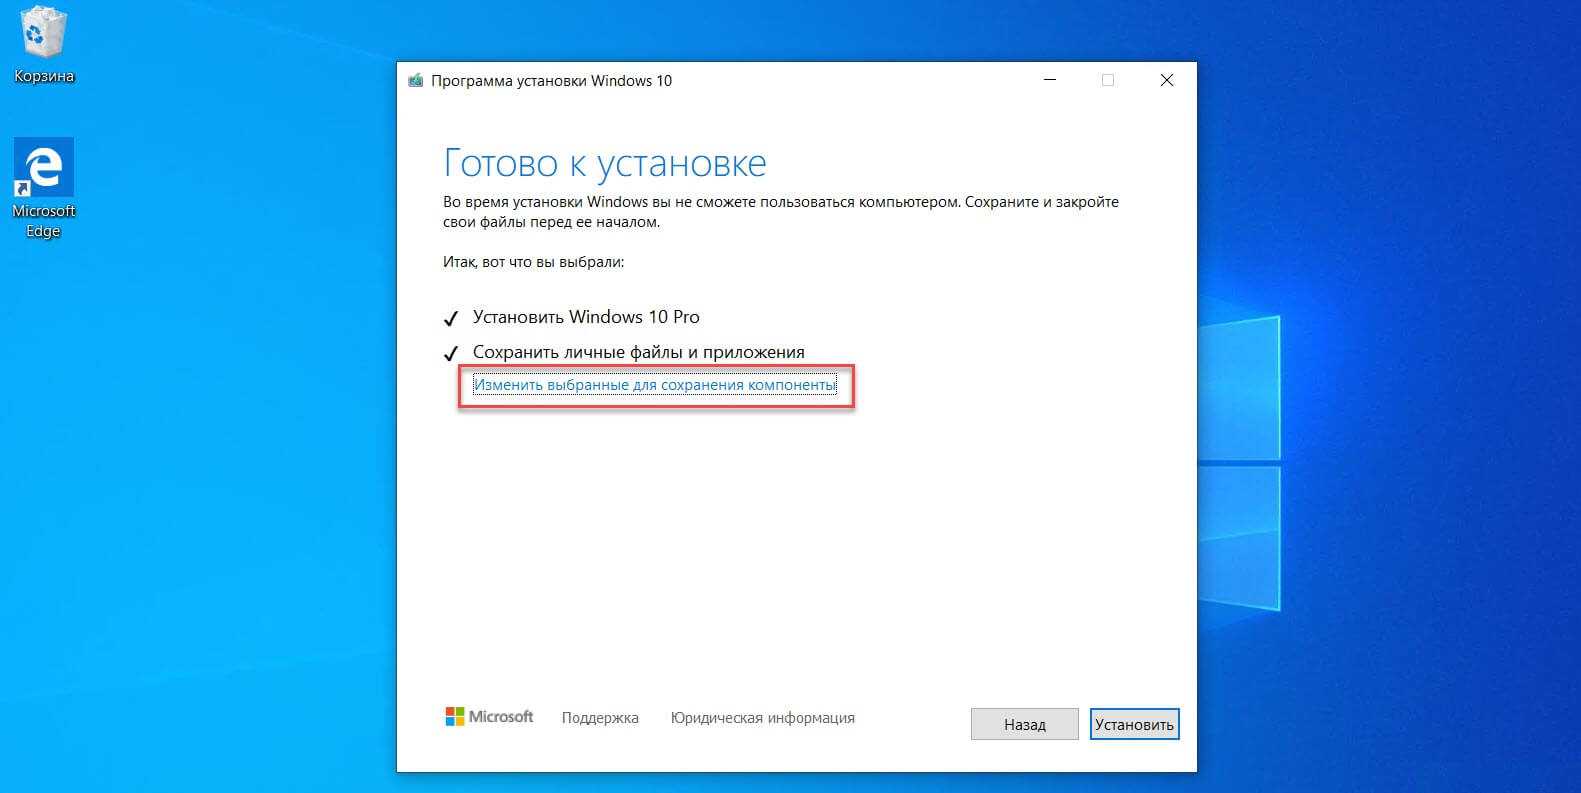 Программы сохранения windows 10. Установка Windows 10. Программа установки виндовс 10. Установленная Windows 10. Файл Windows 10.